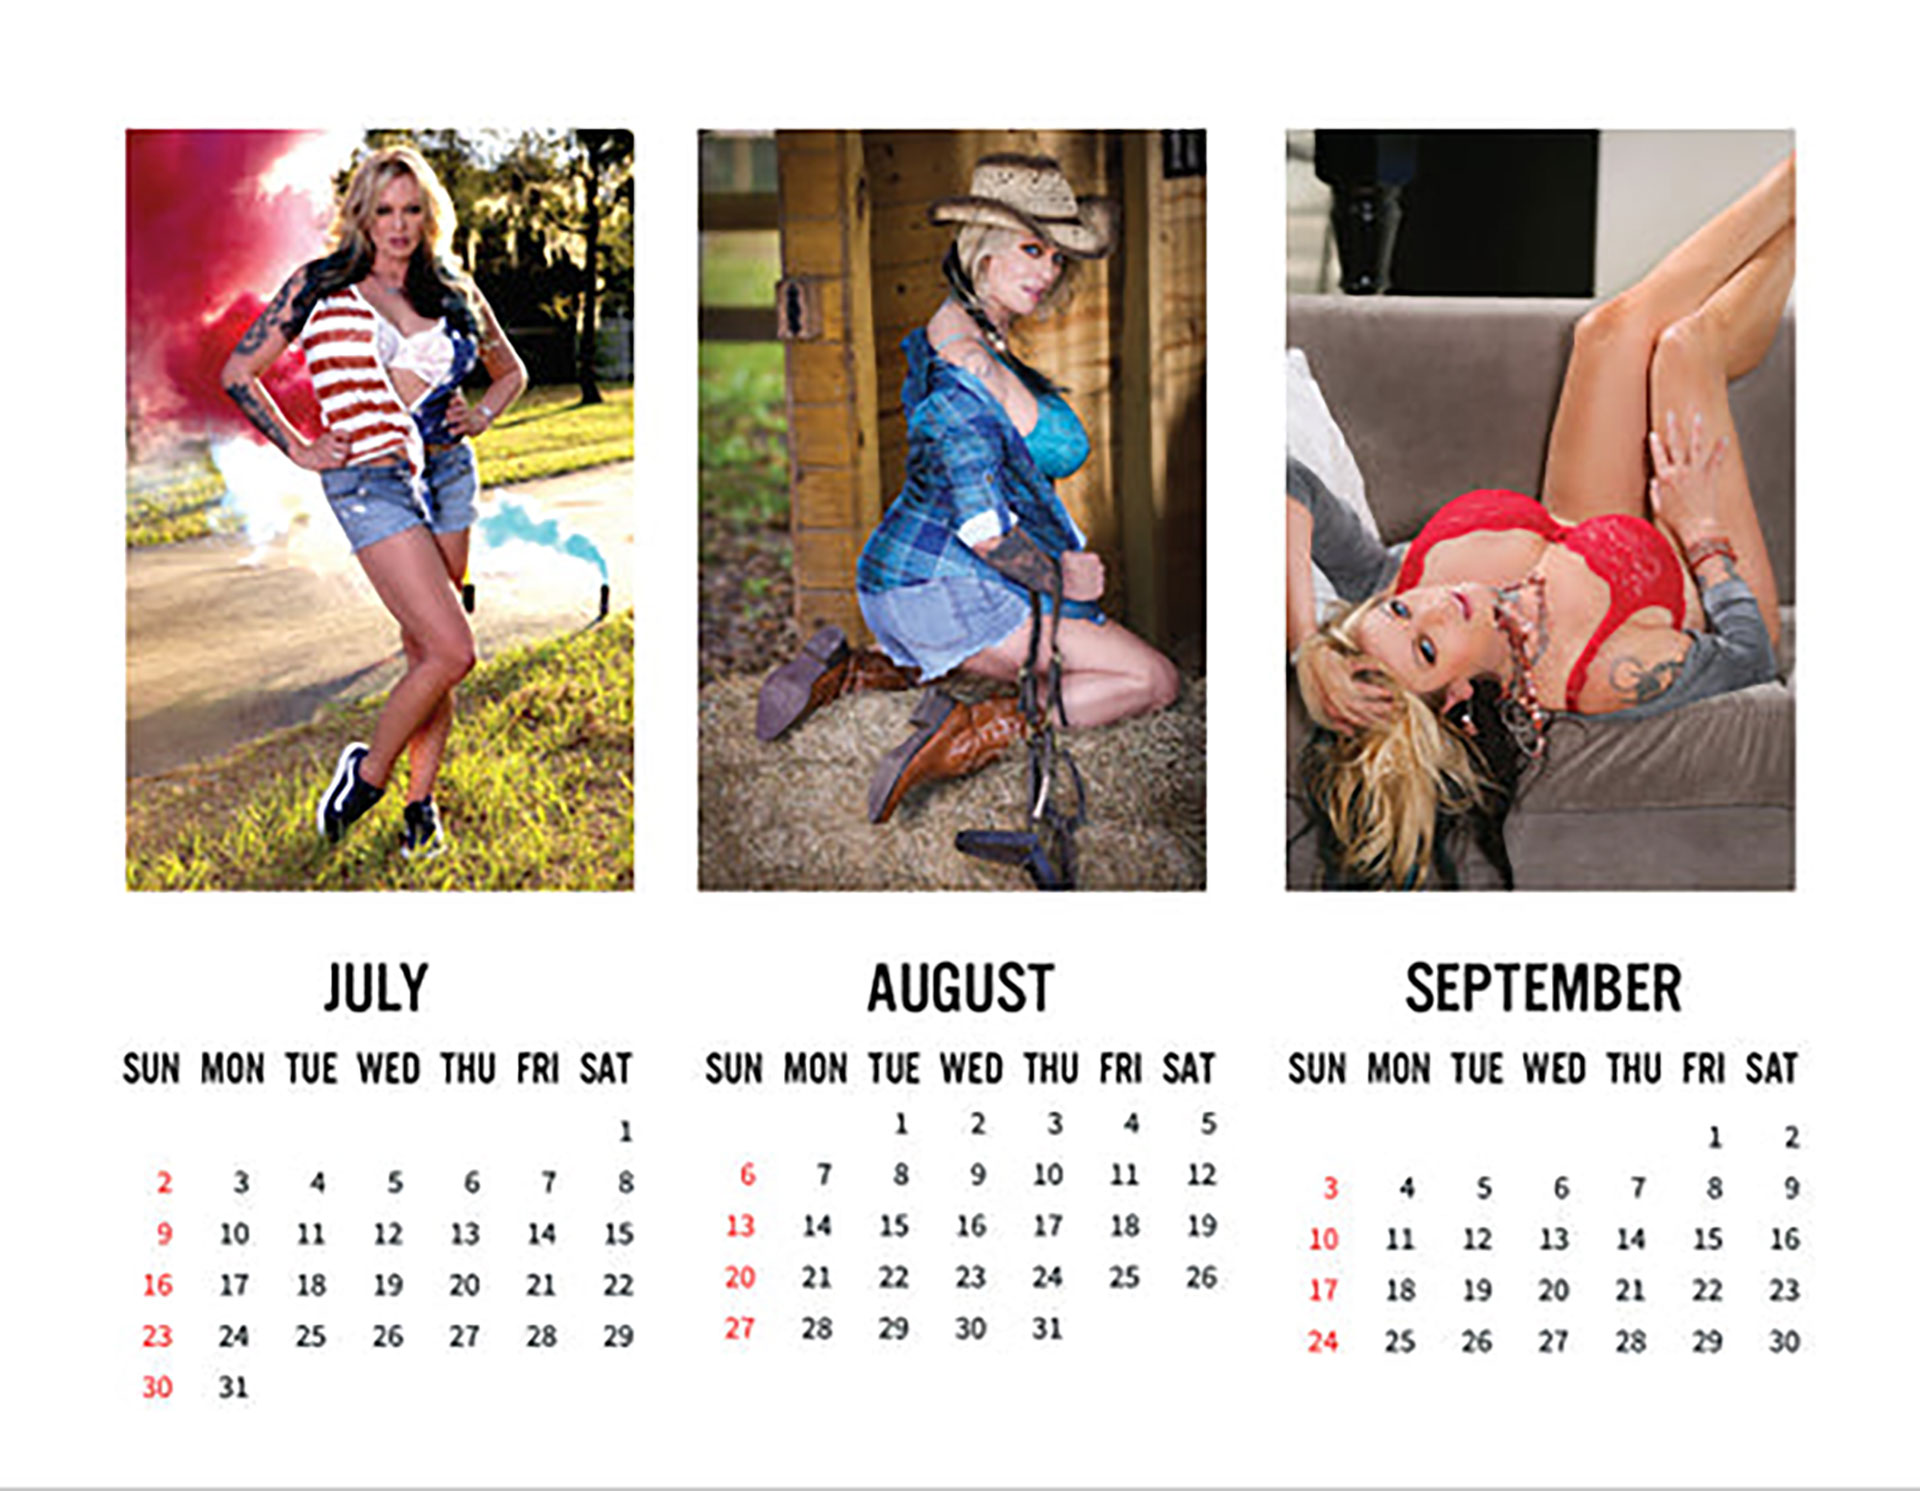 Un calendario de la actriz porno, Stormy Daniels